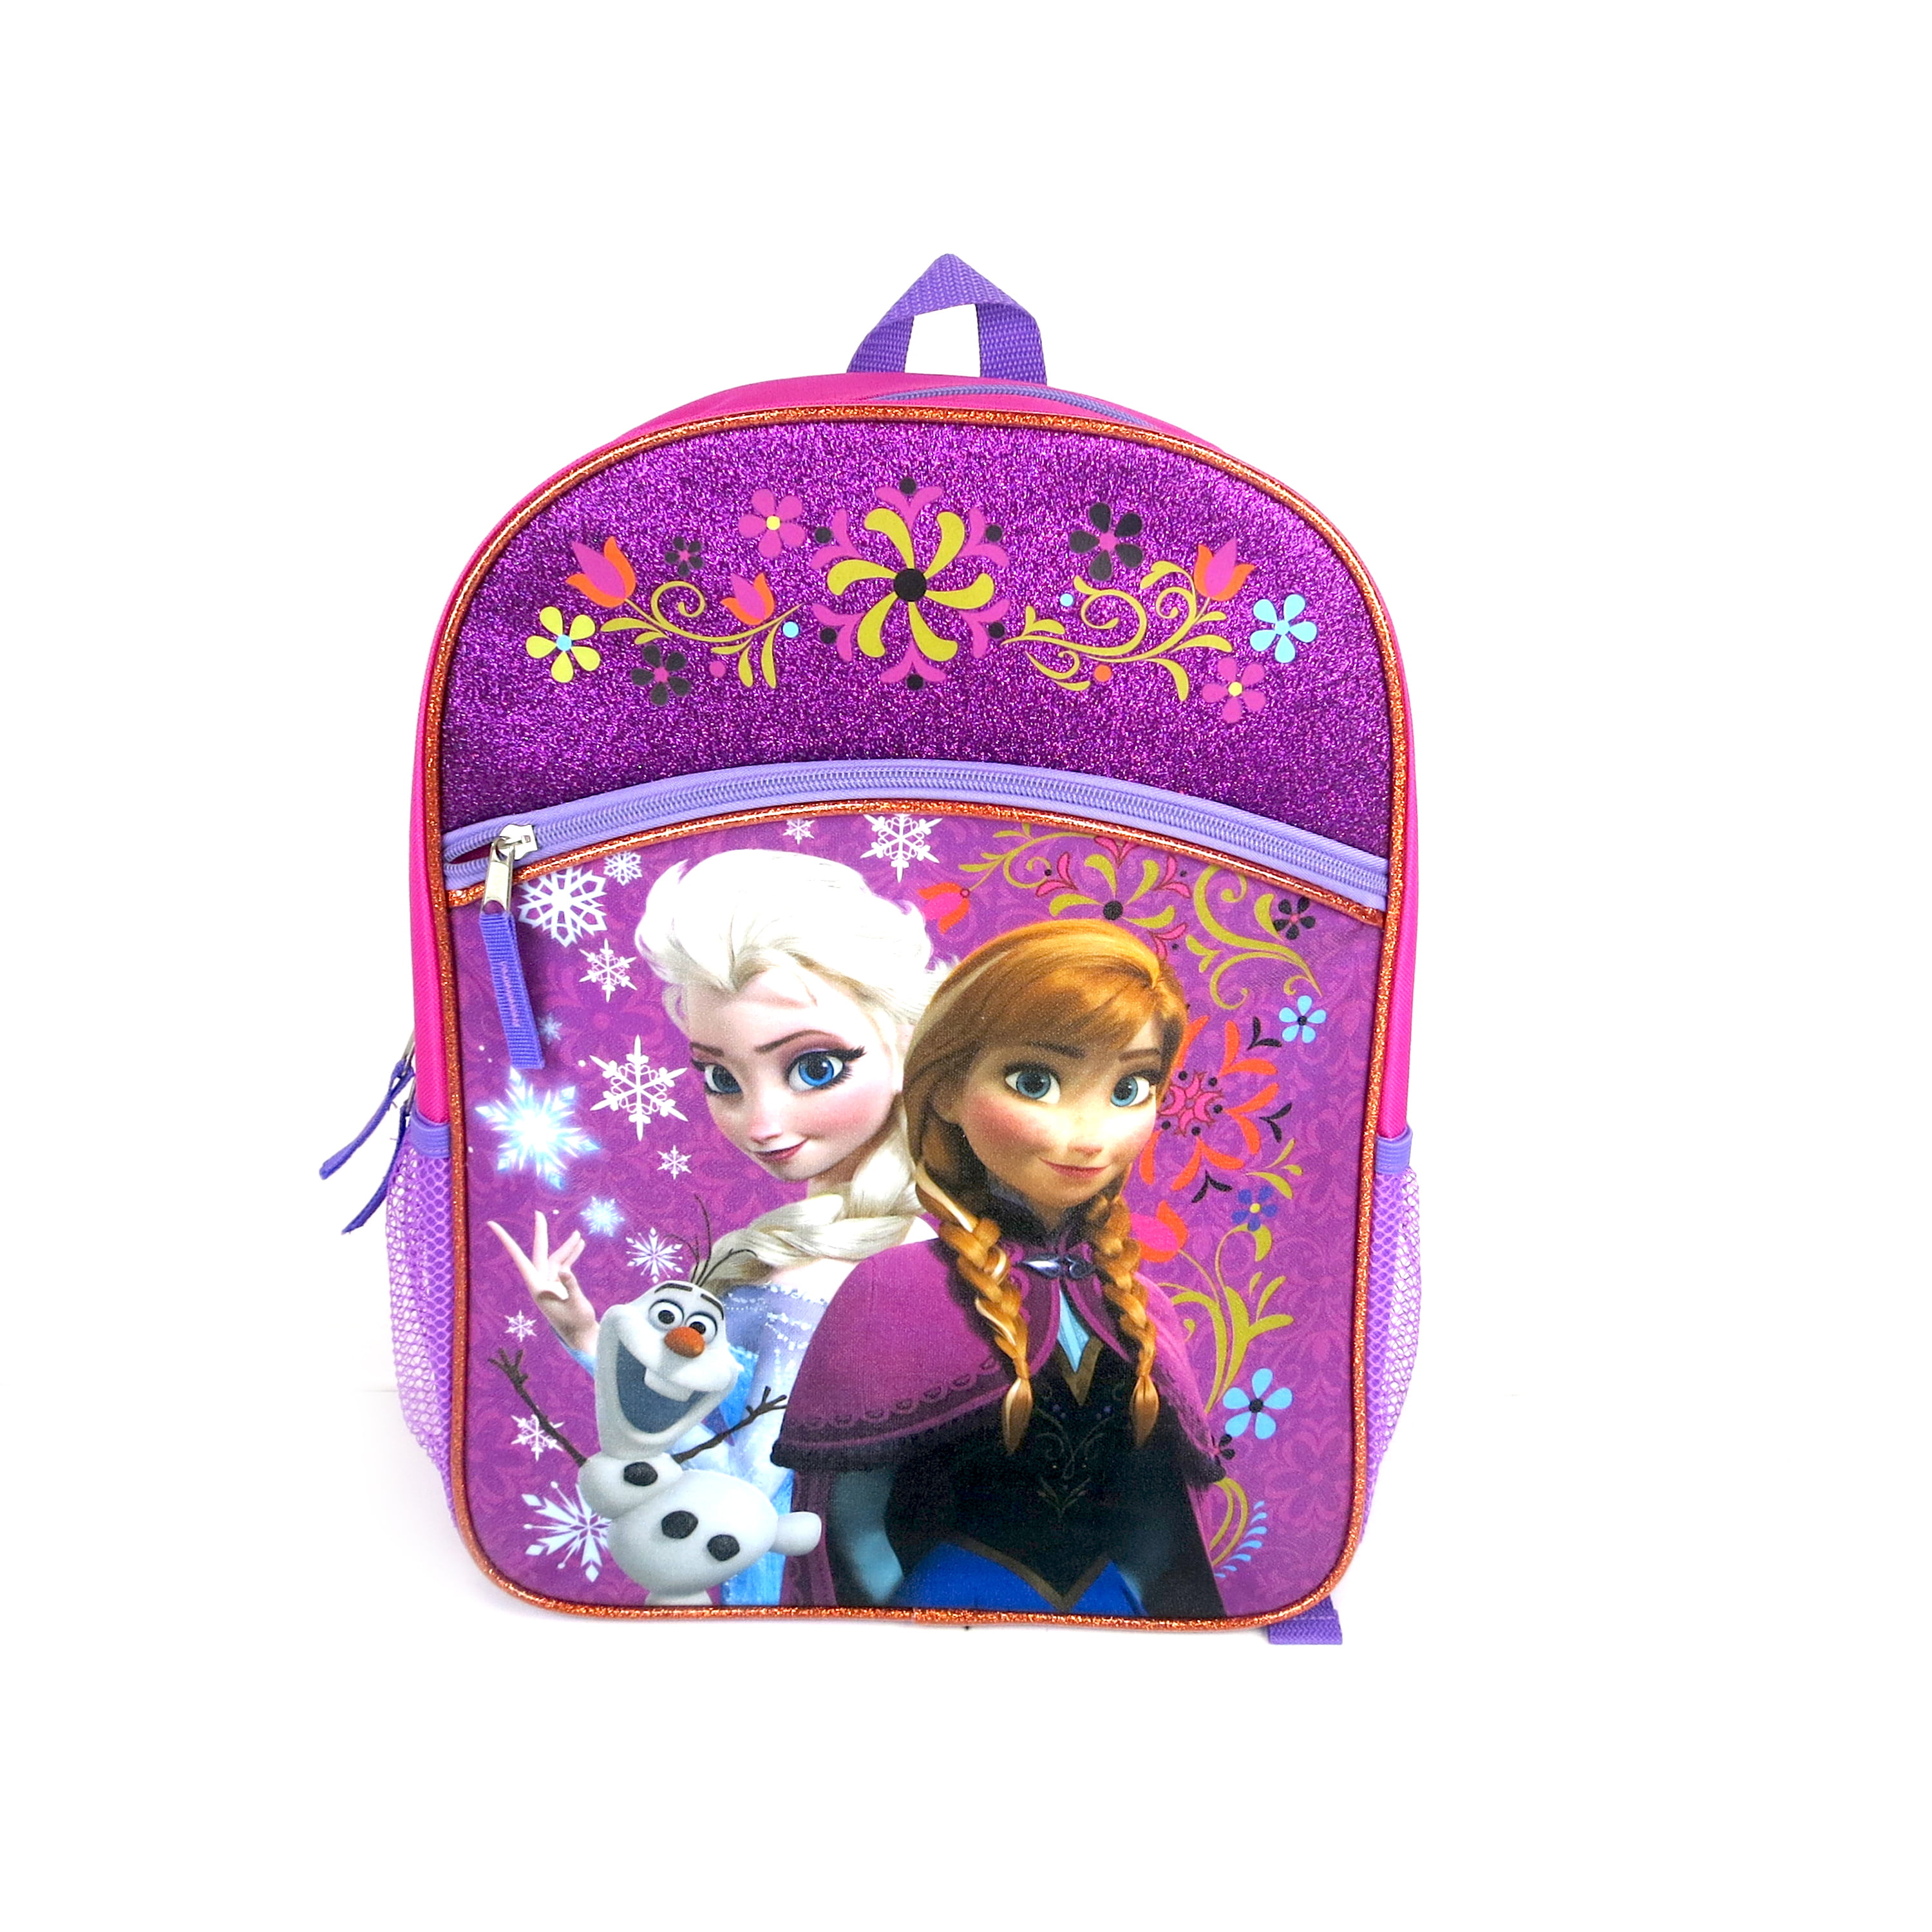 Frozen 14" Medium  School Backpack Lunch Bag 2pc Set Elsa Anna Olaf Pink Floral 